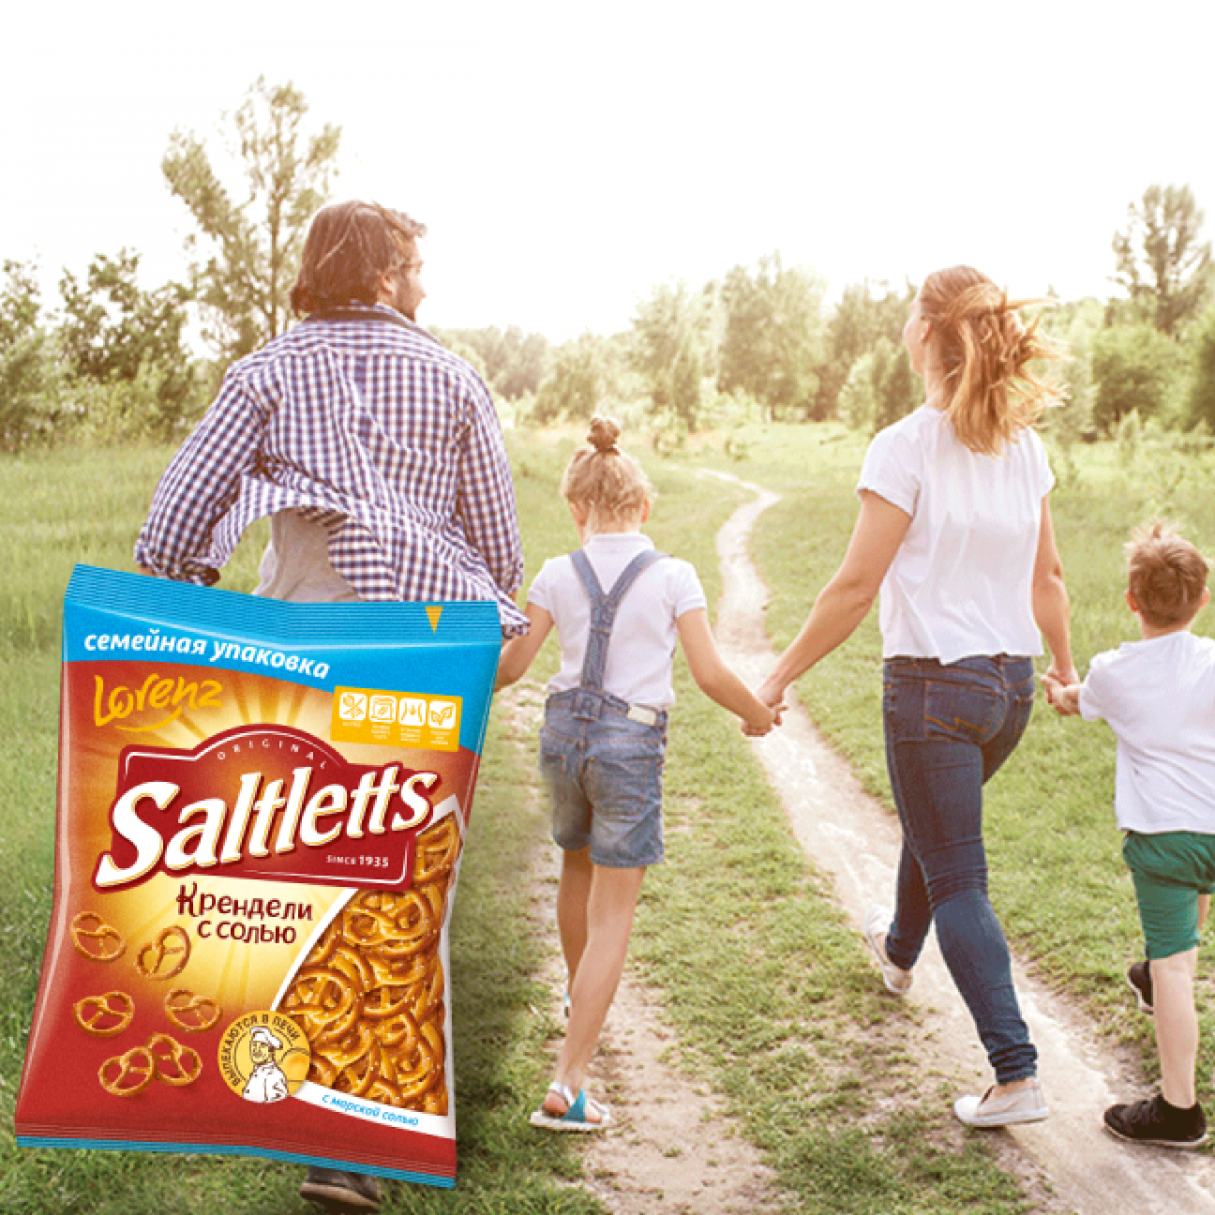 Saltletts family pack